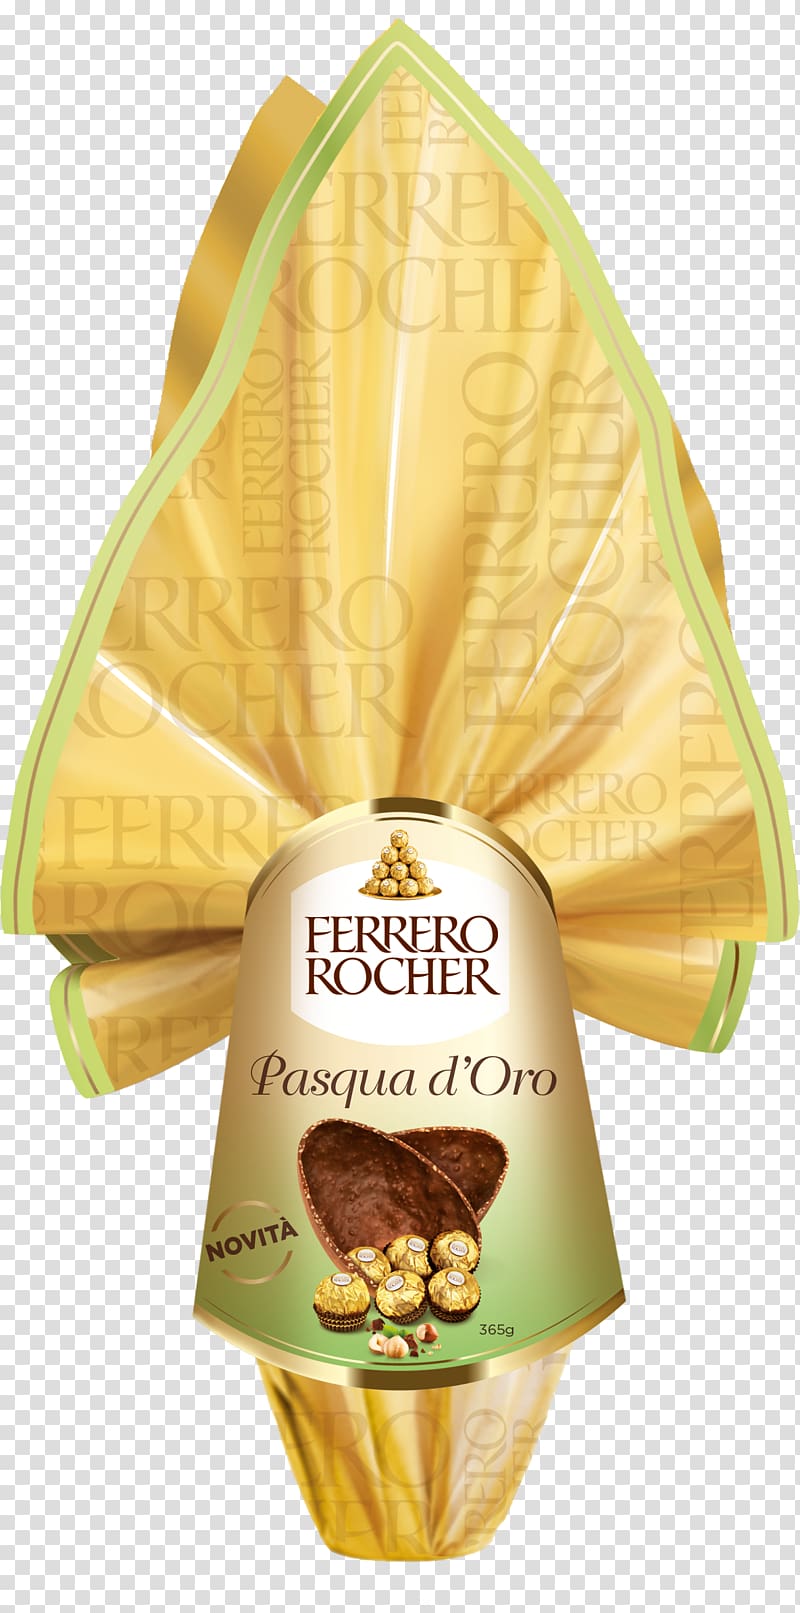 Ferrero Rocher Colomba di Pasqua Ferrero SpA Egg Food, Egg transparent background PNG clipart